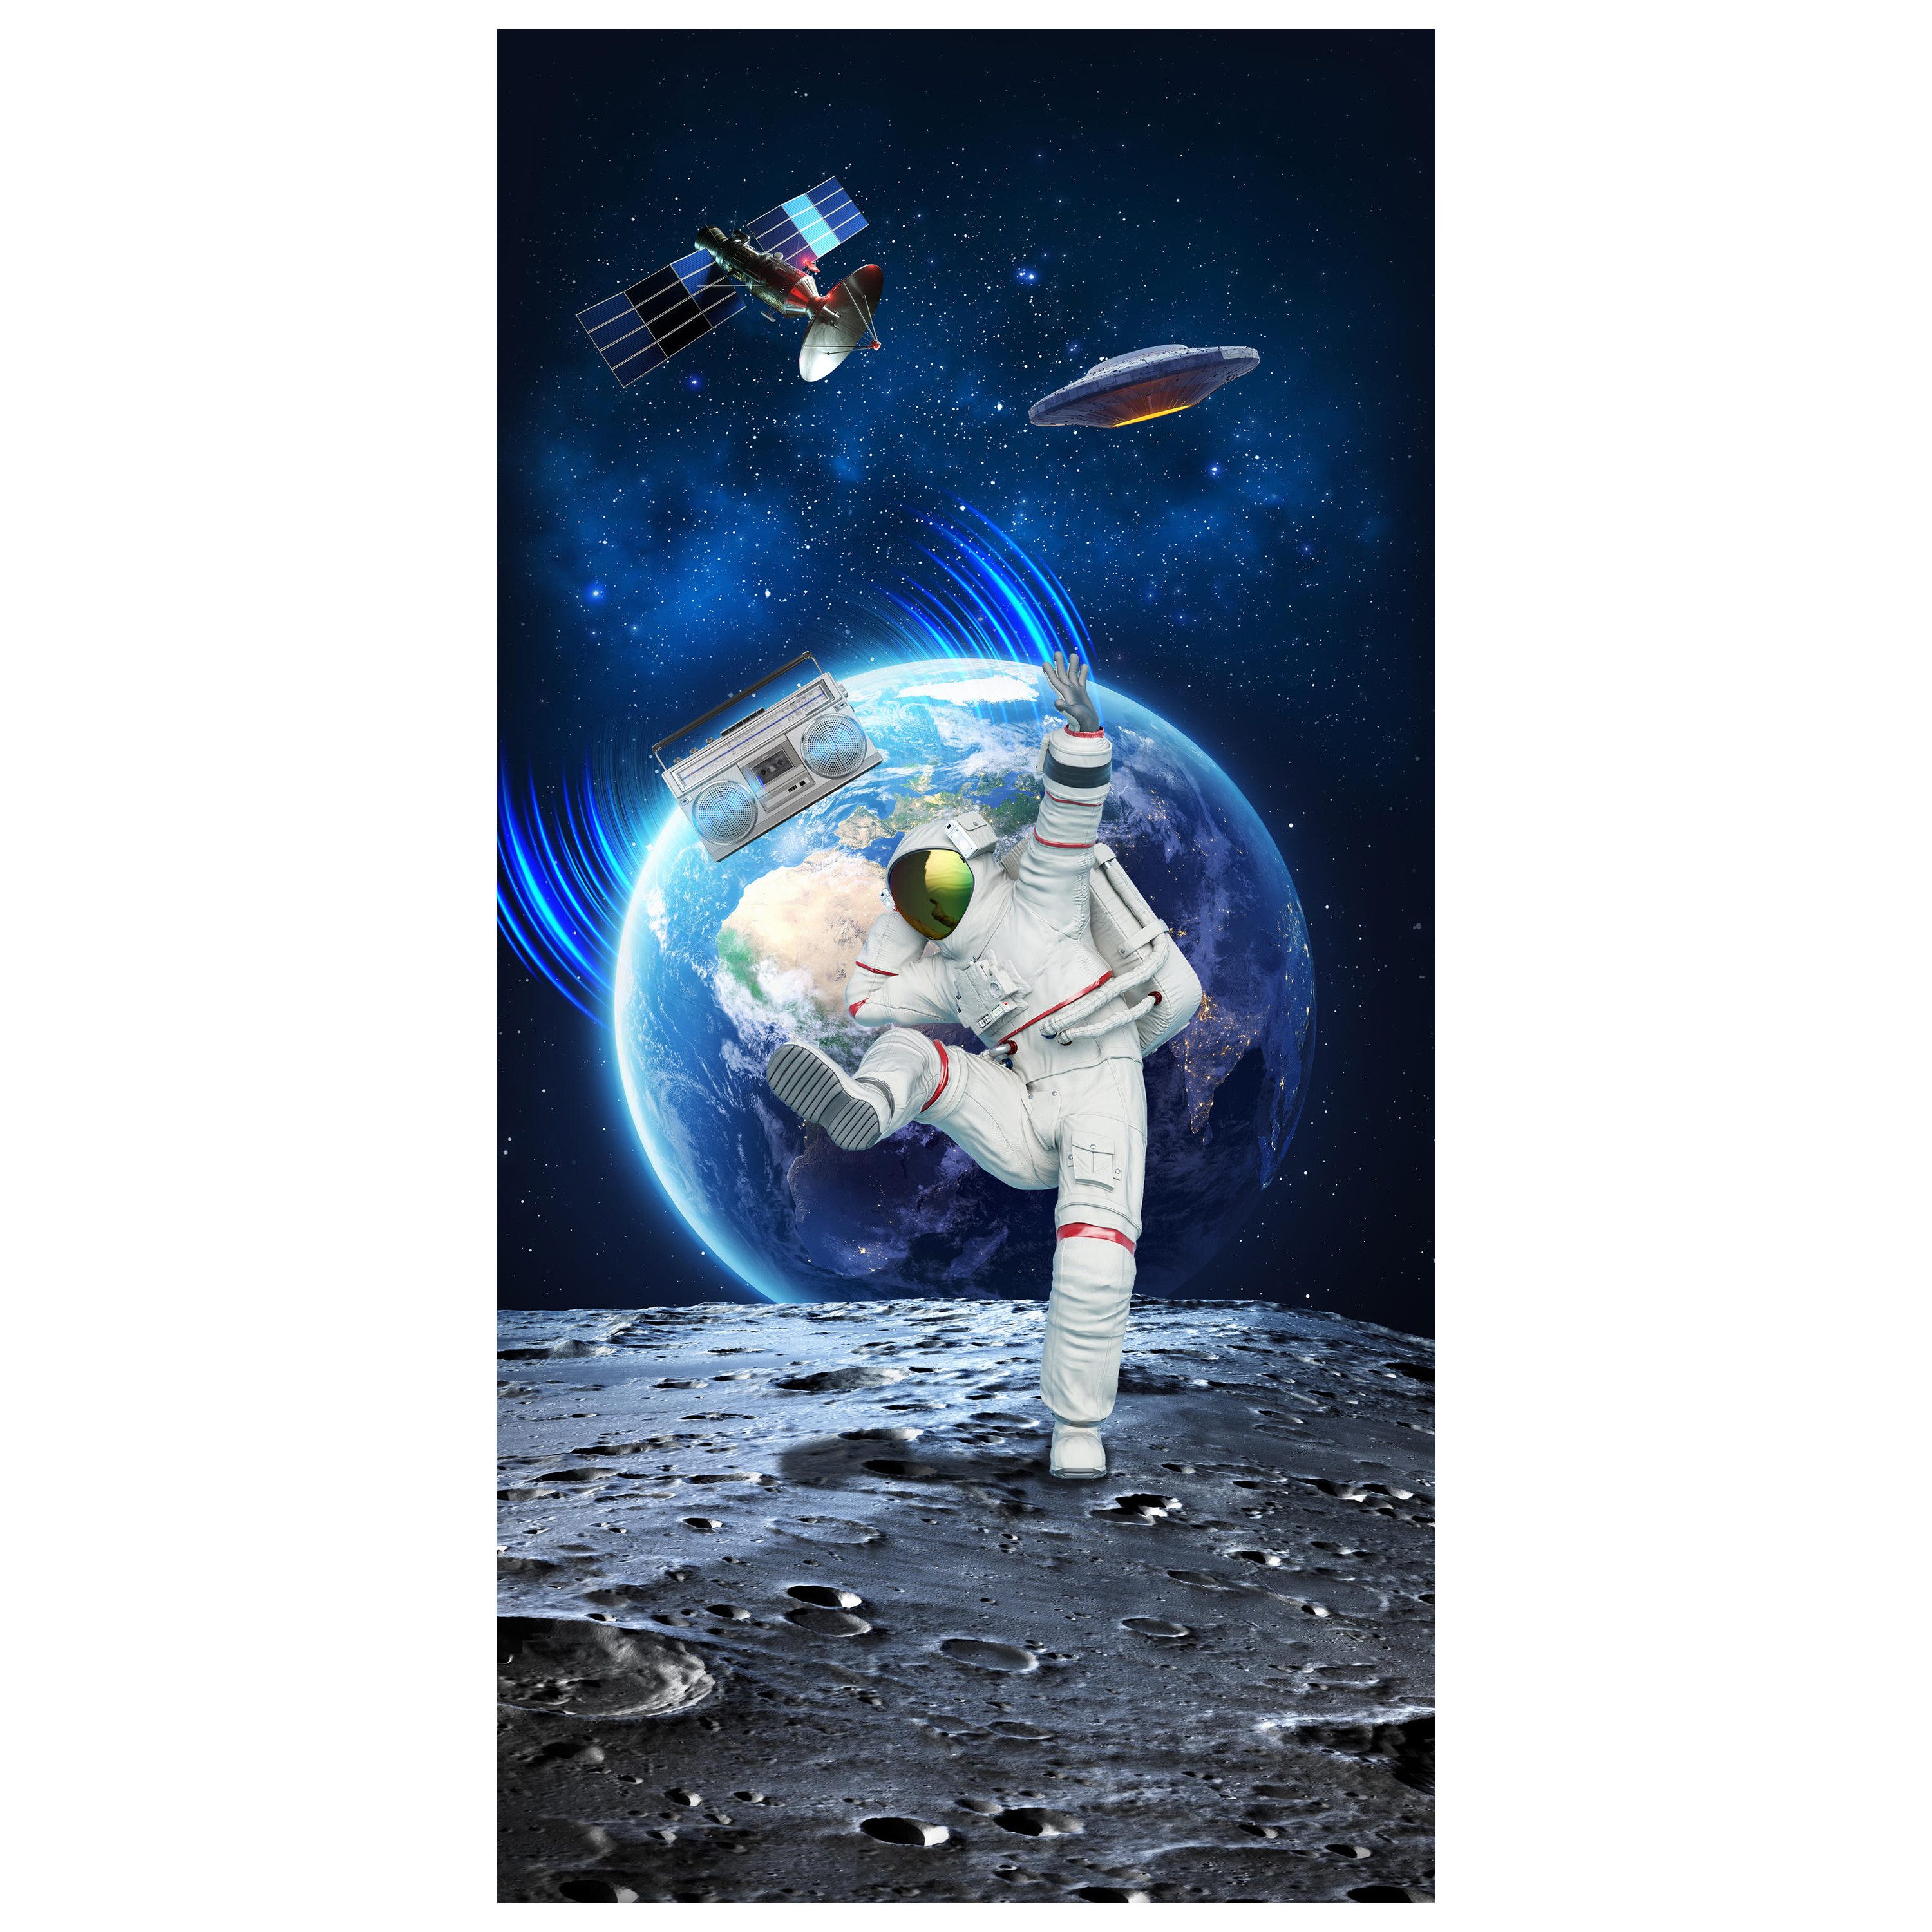 wandmotiv24 Türtapete tanzender Astronaut auf Mond, Weltraum, glatt, Fototapete, Wandtapete, Motivtapete, matt, selbstklebende Dekorfolie